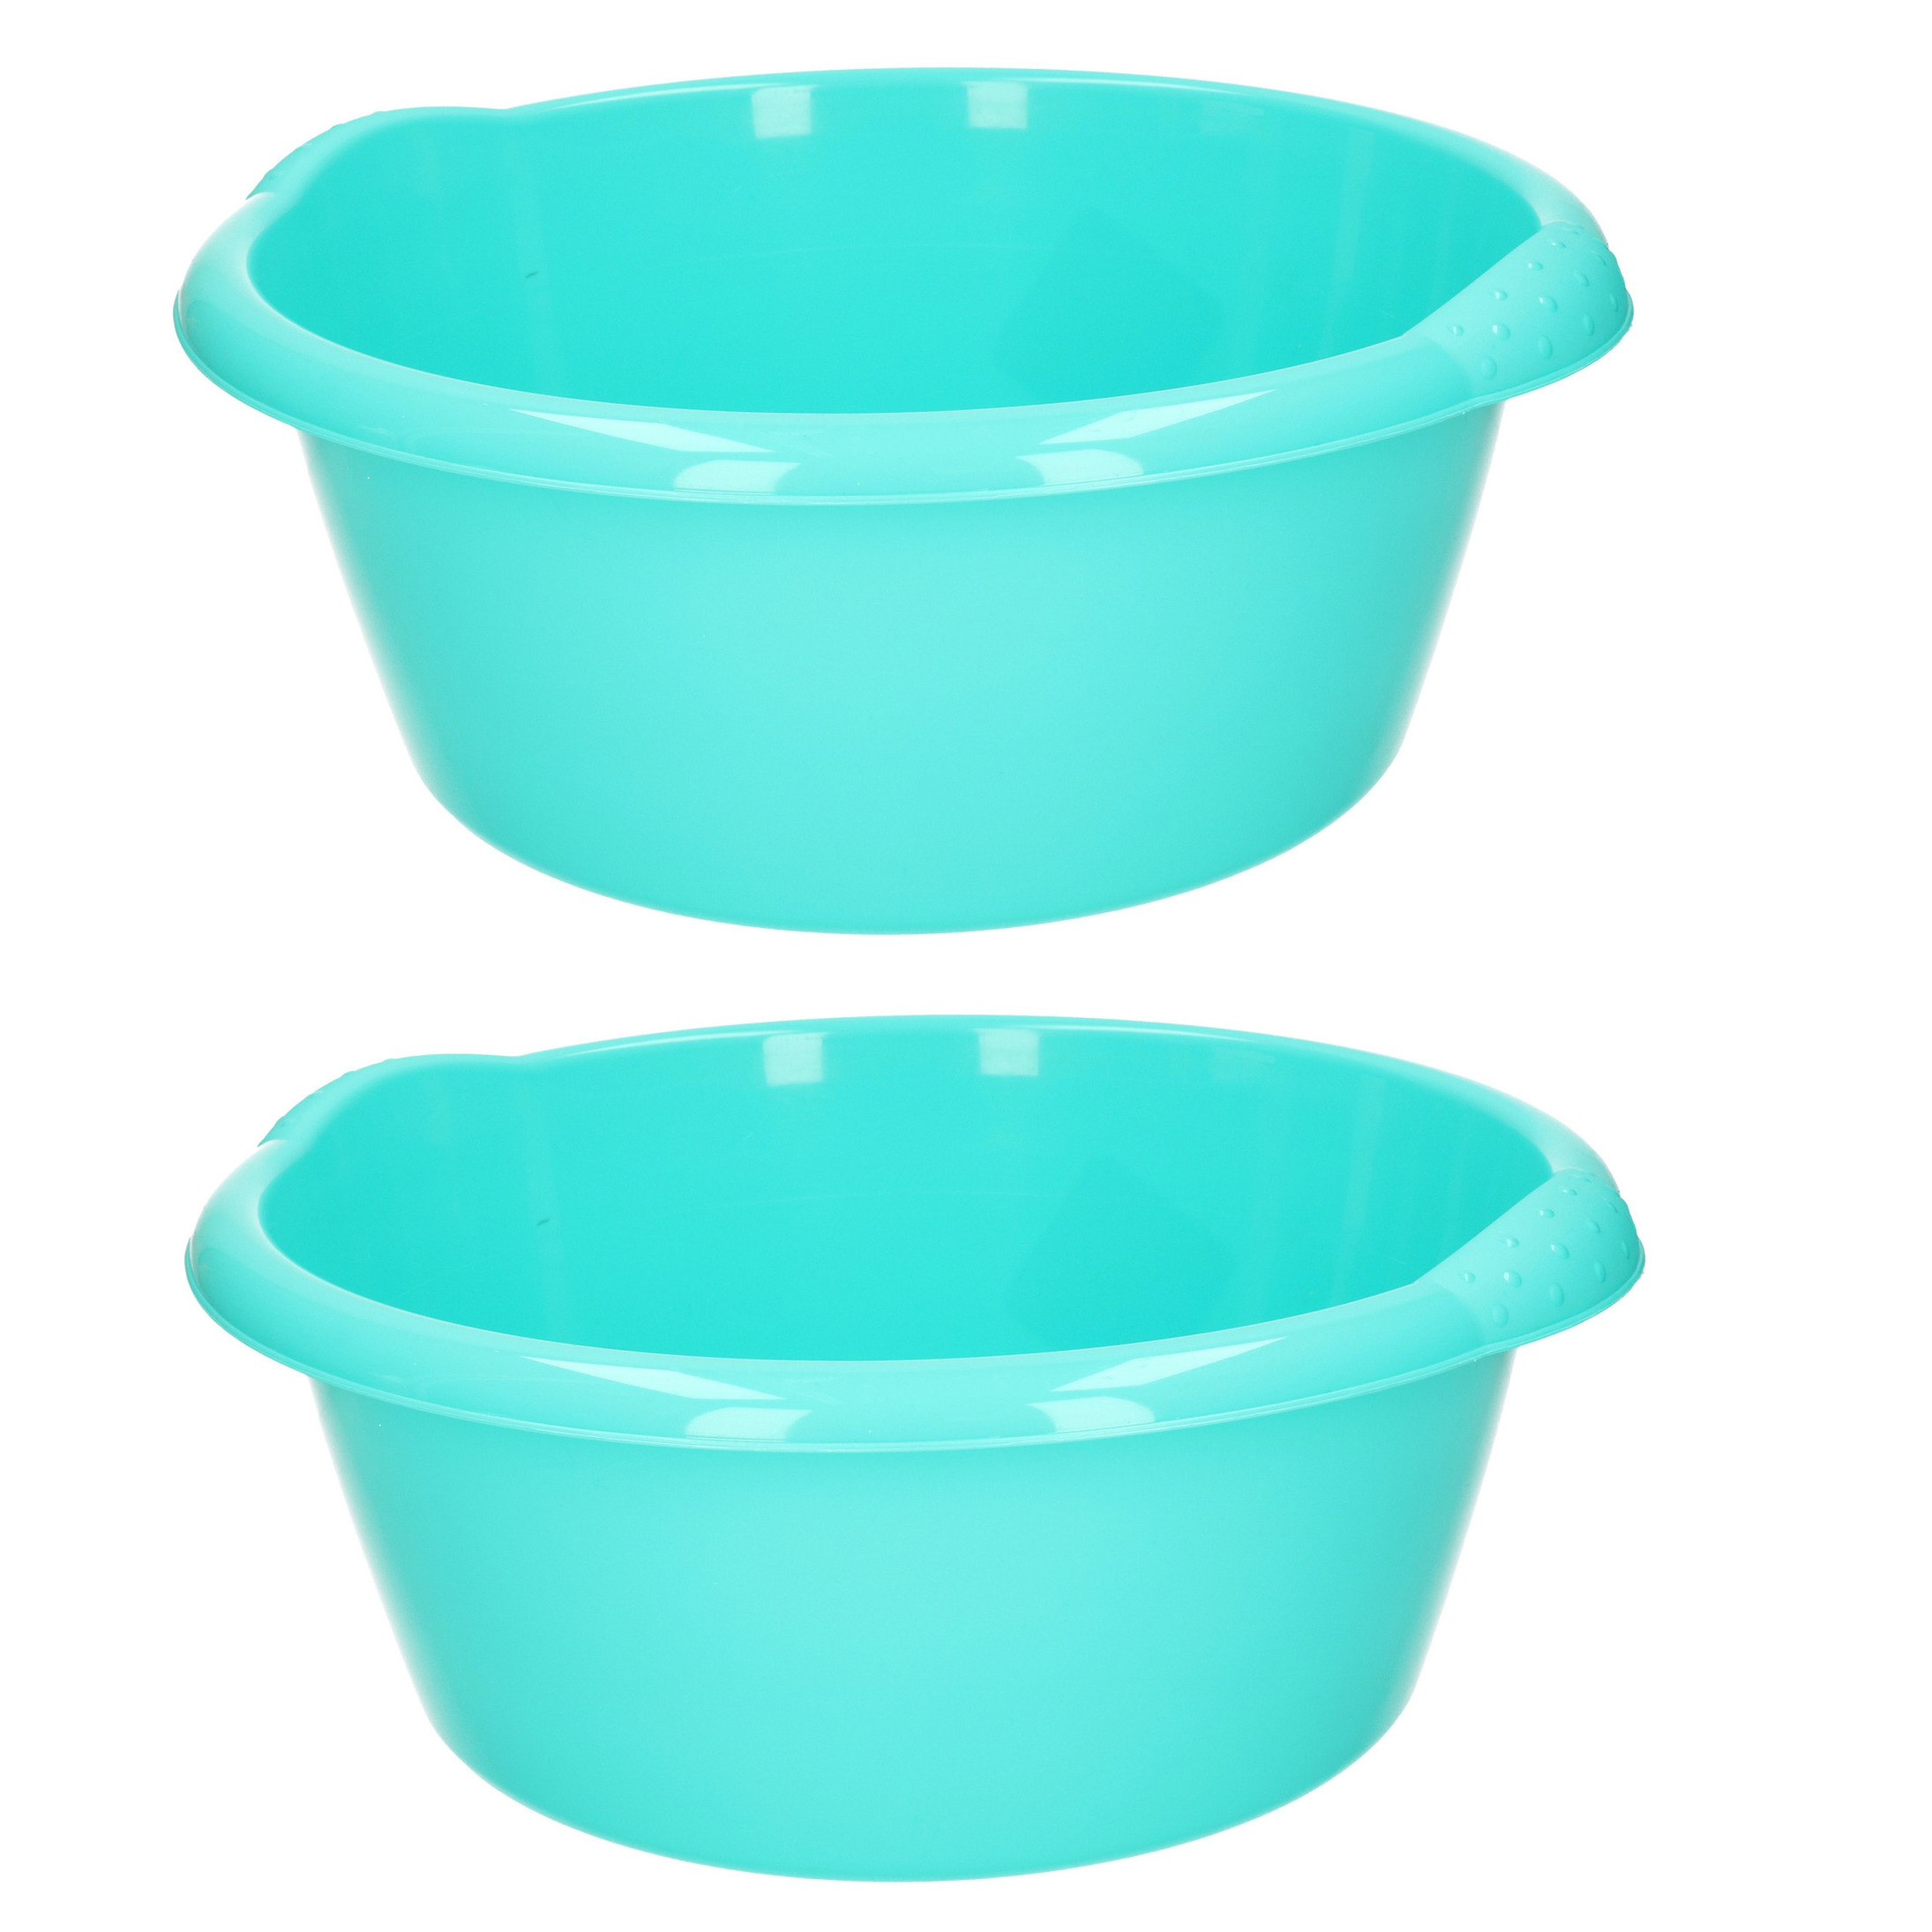 Set van 2x stuks rond afwasteiltje-emmertje turquoise groen 3 liter 25 x 10,5 cm schoonmaakartikelen